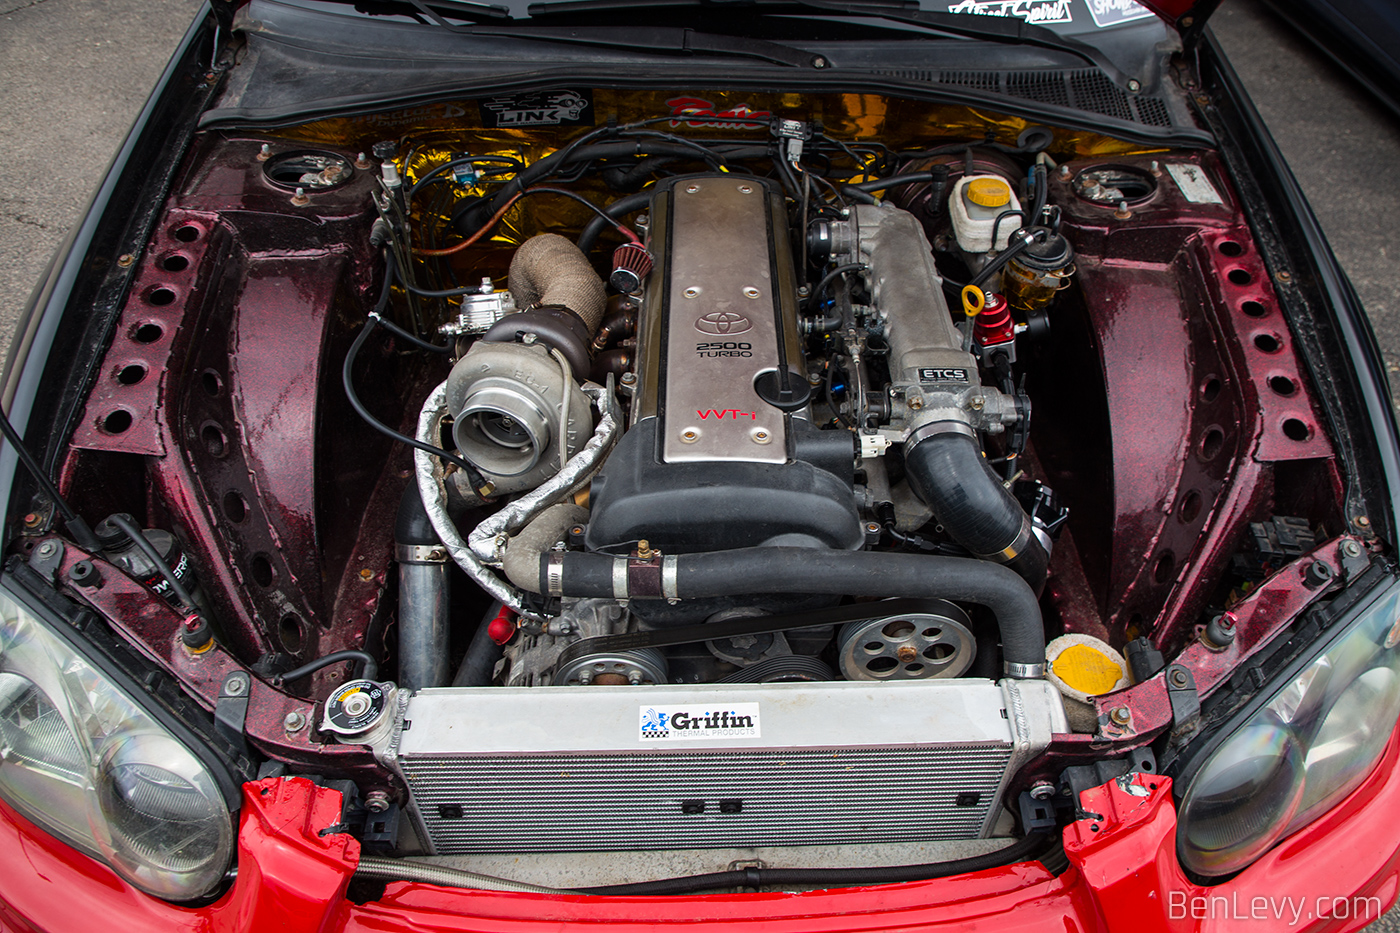 Toyota 1JZ Engine in Subaru WRX